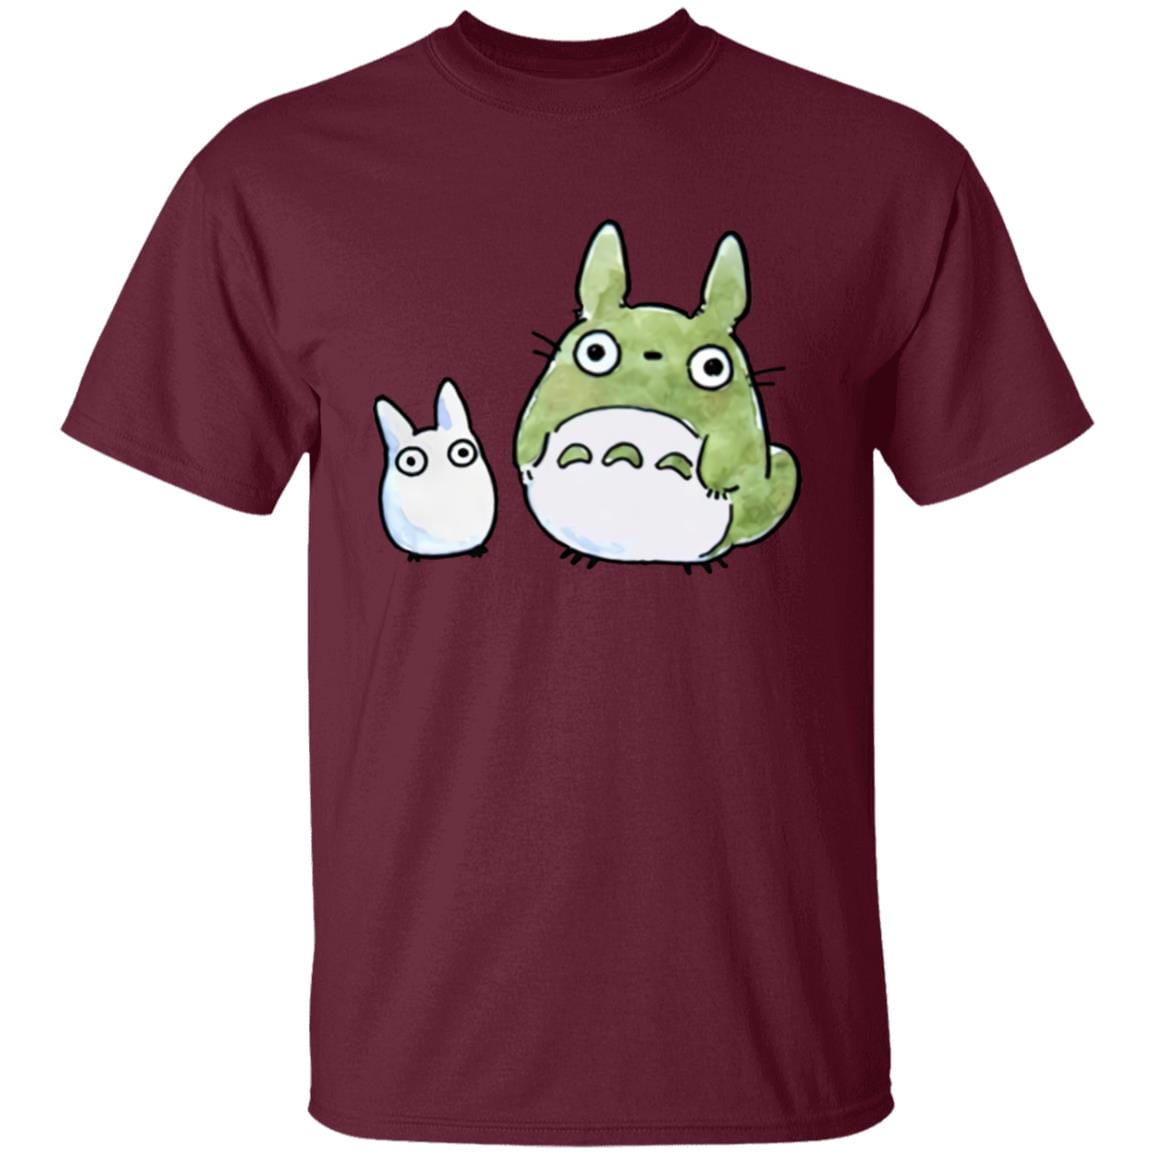 Totoro Family Cute Drawing T Shirt